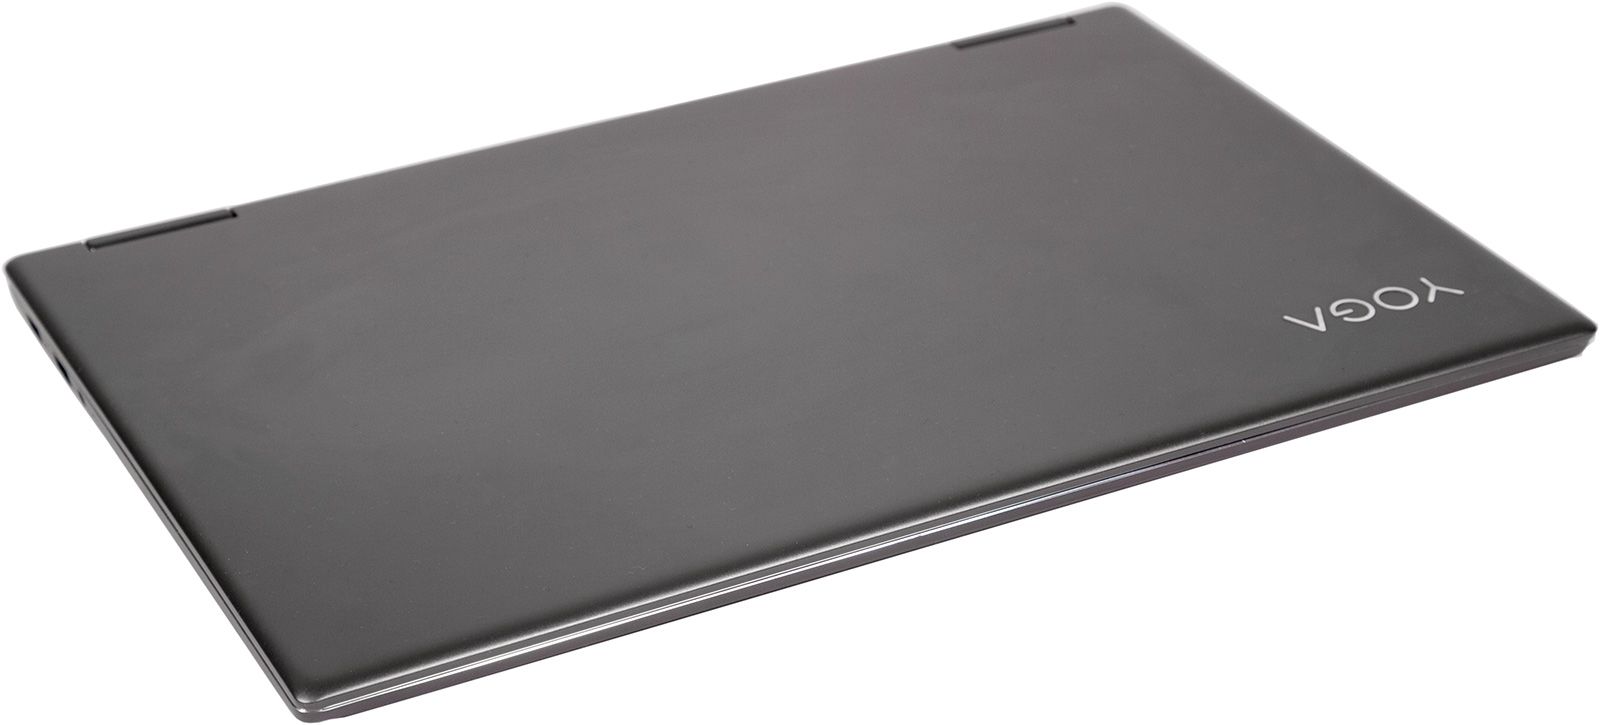 Универсальный Йог. Обзор ноутбука-трансформера Lenovo Yoga 720 - 3